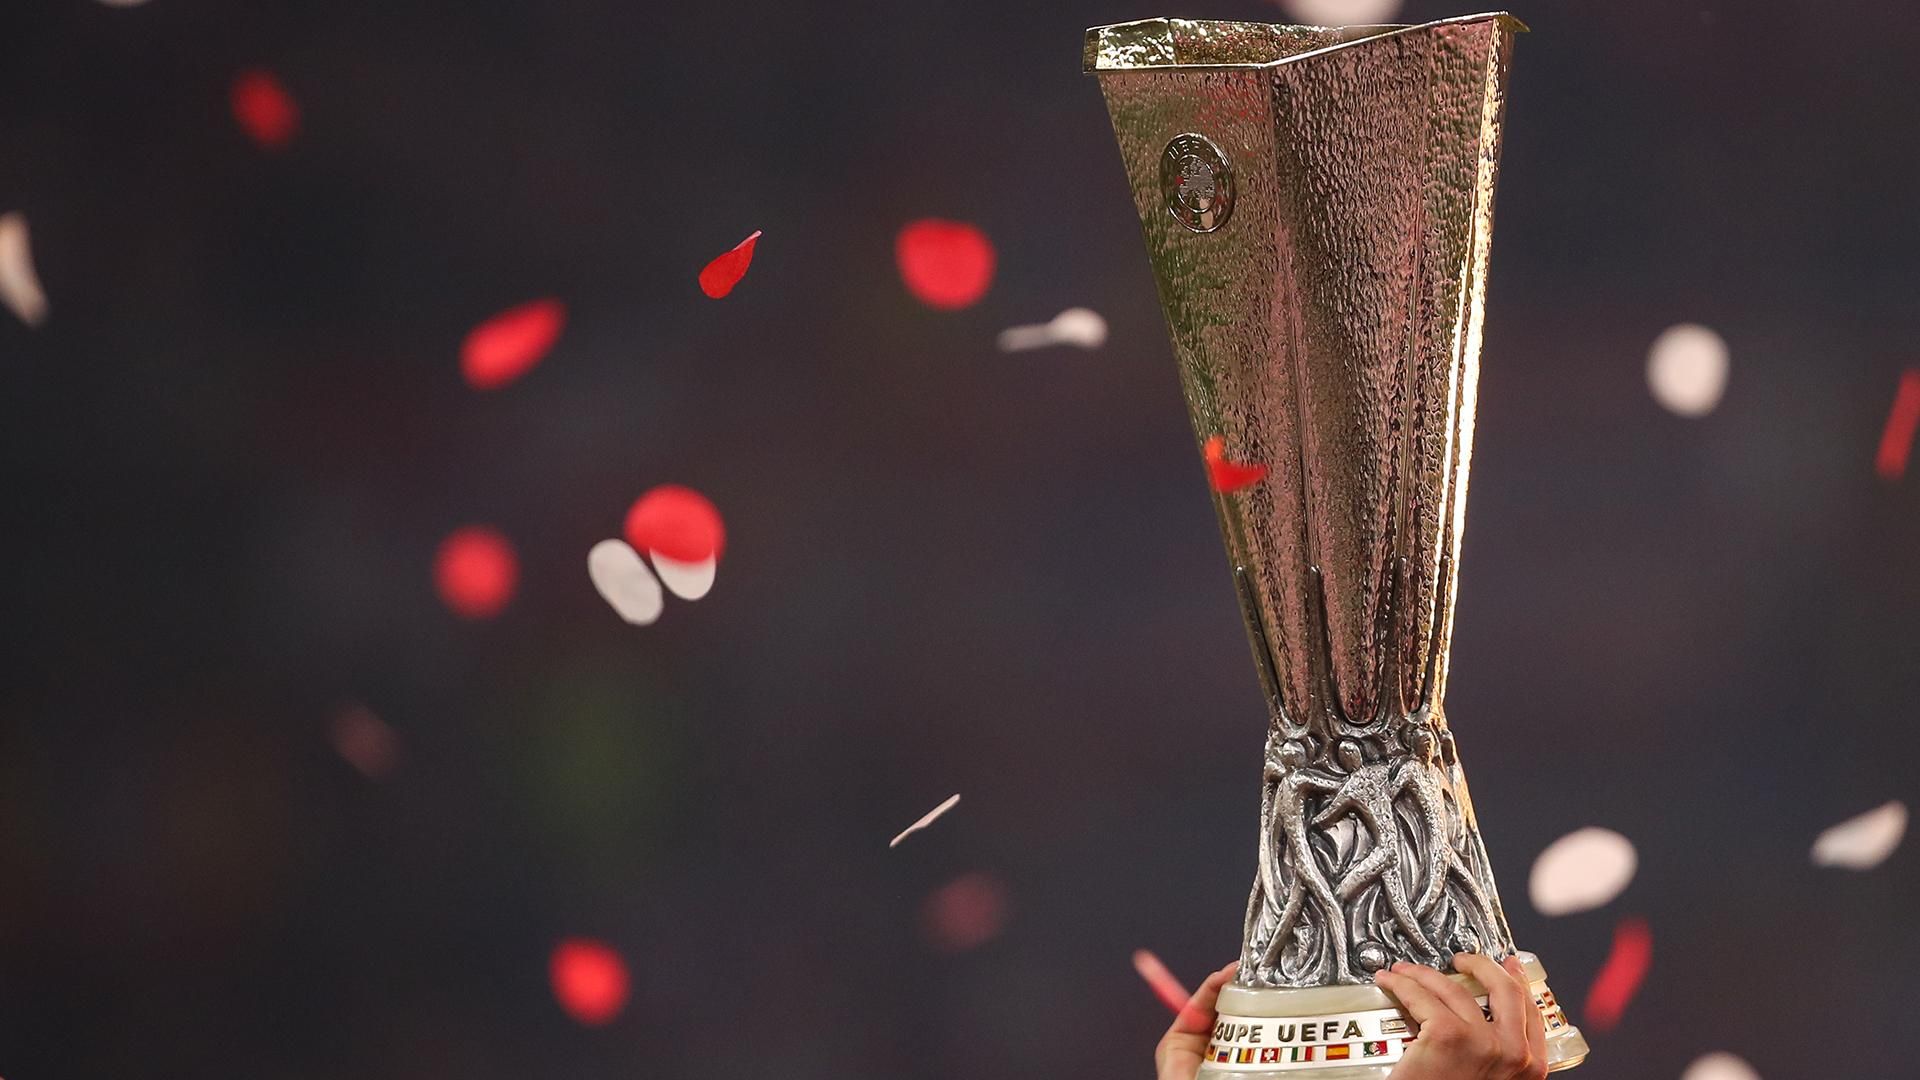 Тоттенхэм, Милан, может Шахтер или Динамо: какие шансы у команд выиграть Лигу Европы